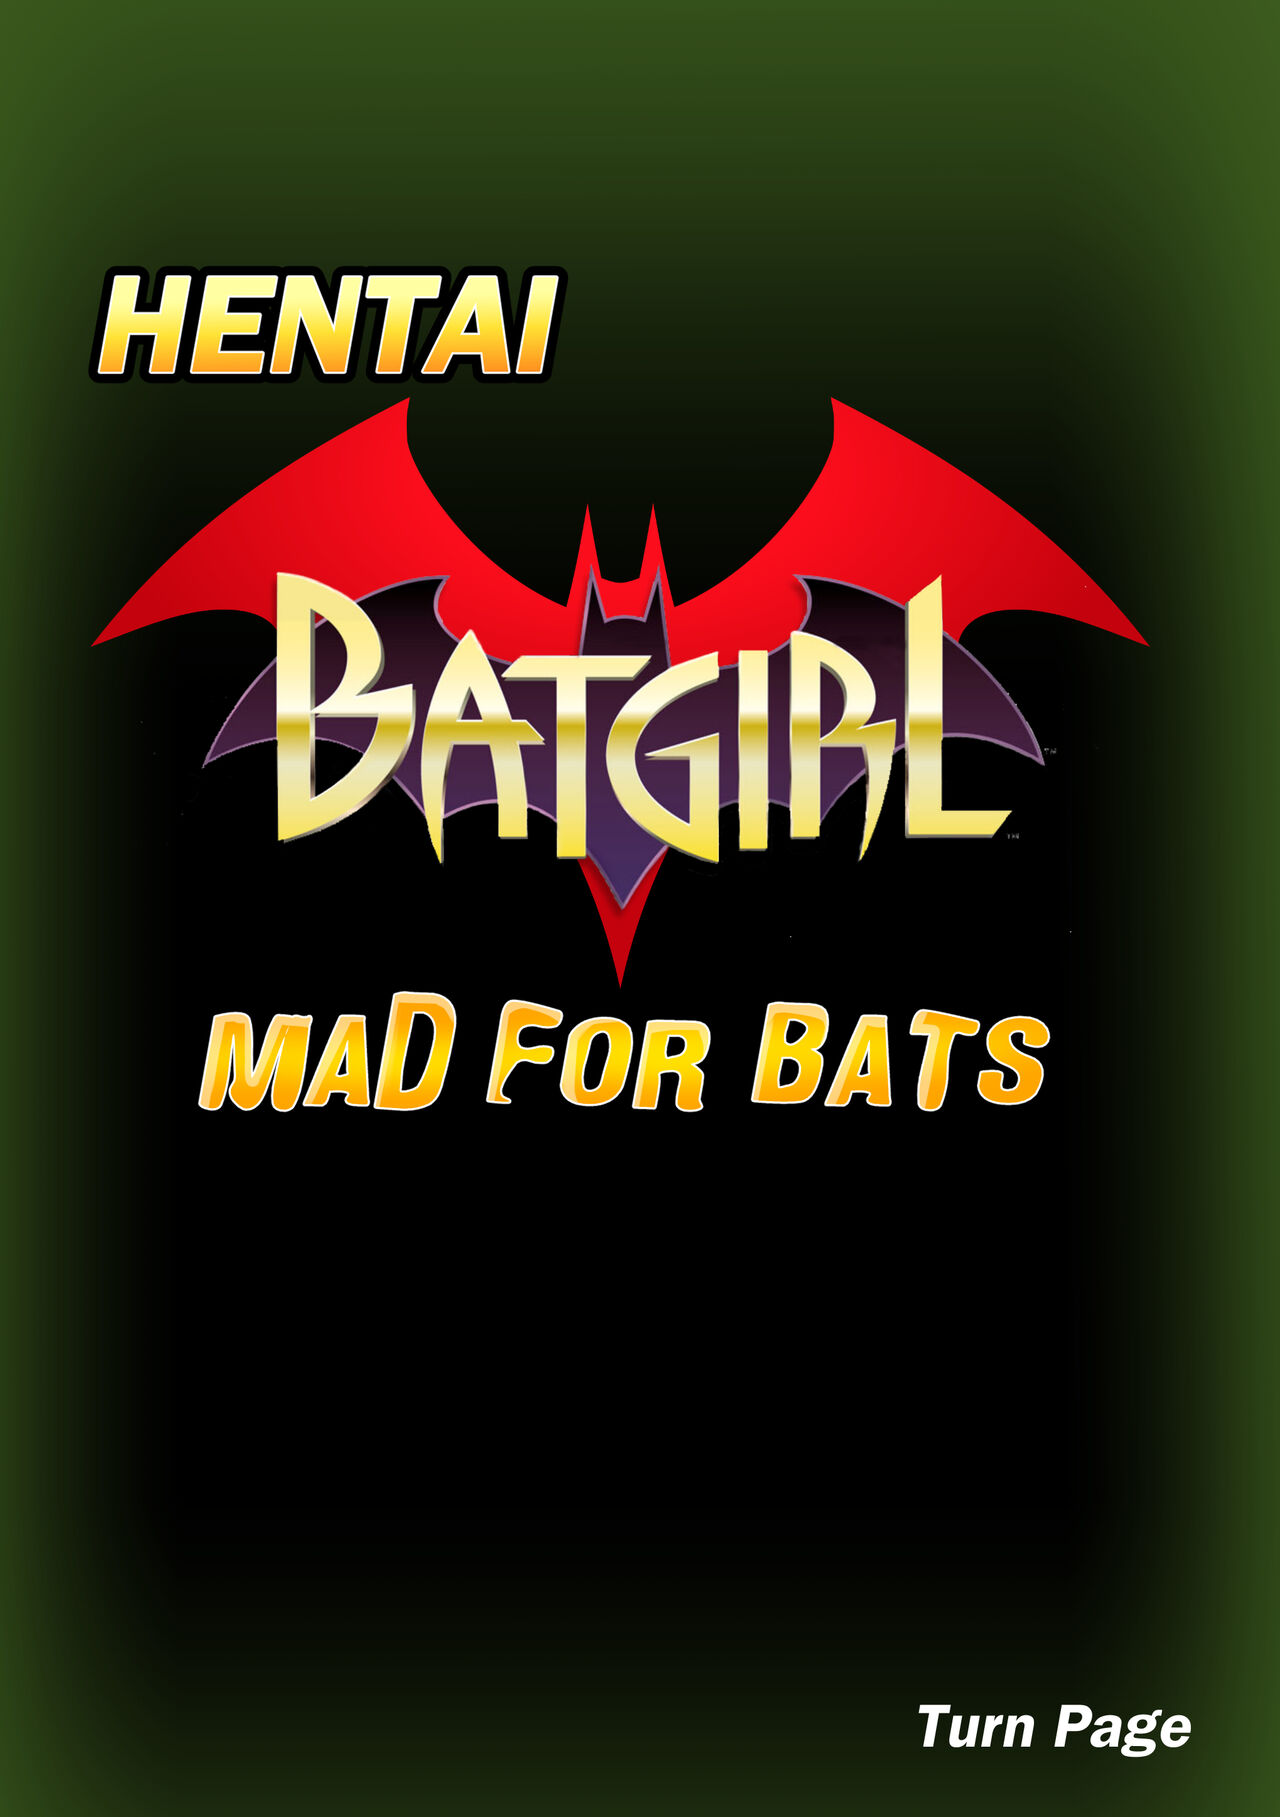 Batgirl Hentai 2: Mad For Bats by Darkfang100